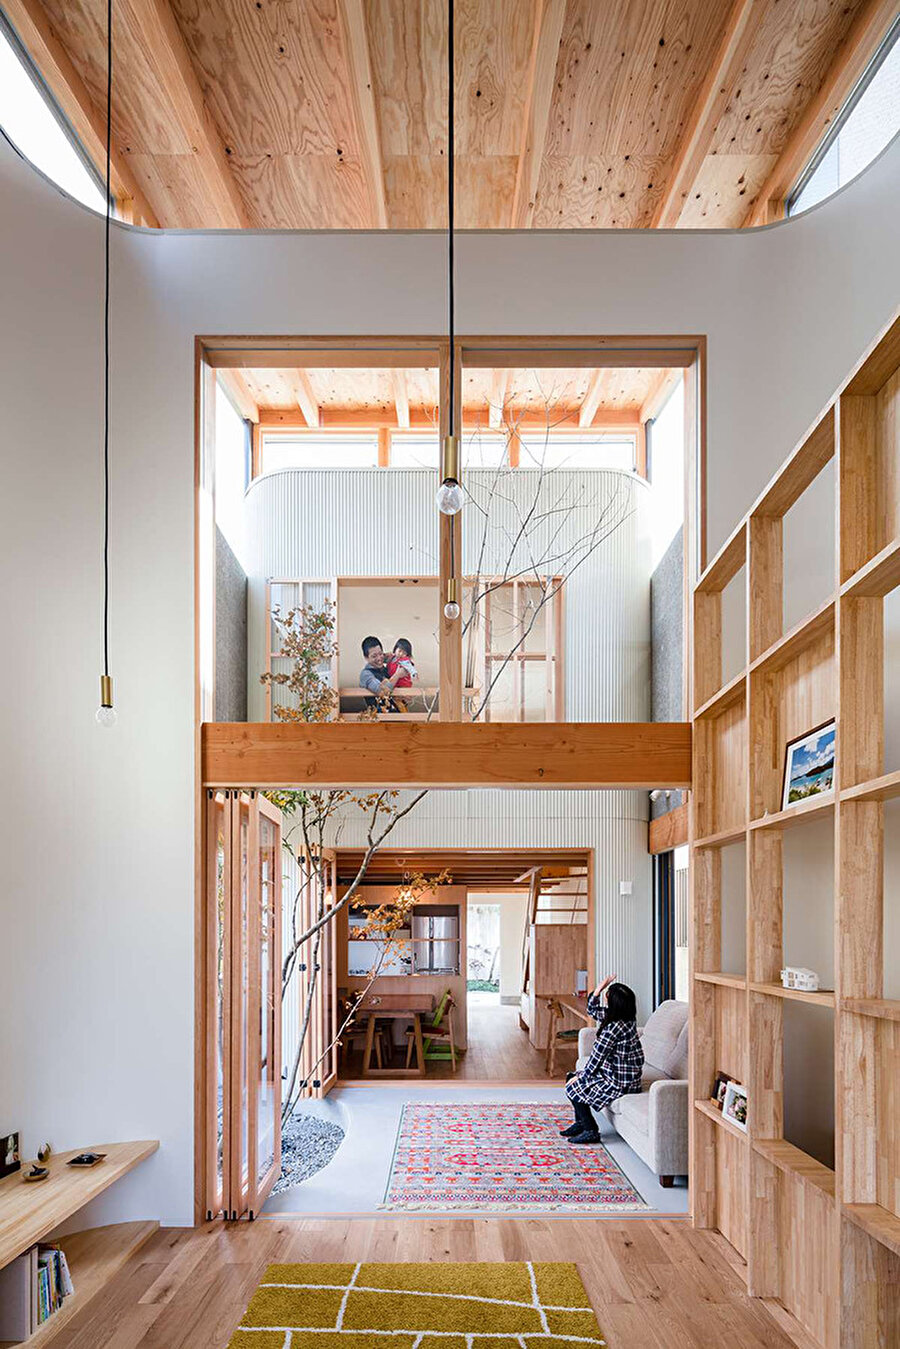 Evin sahip olduğu minimalist tarz, iç mekanda da kendini gösteriyor.